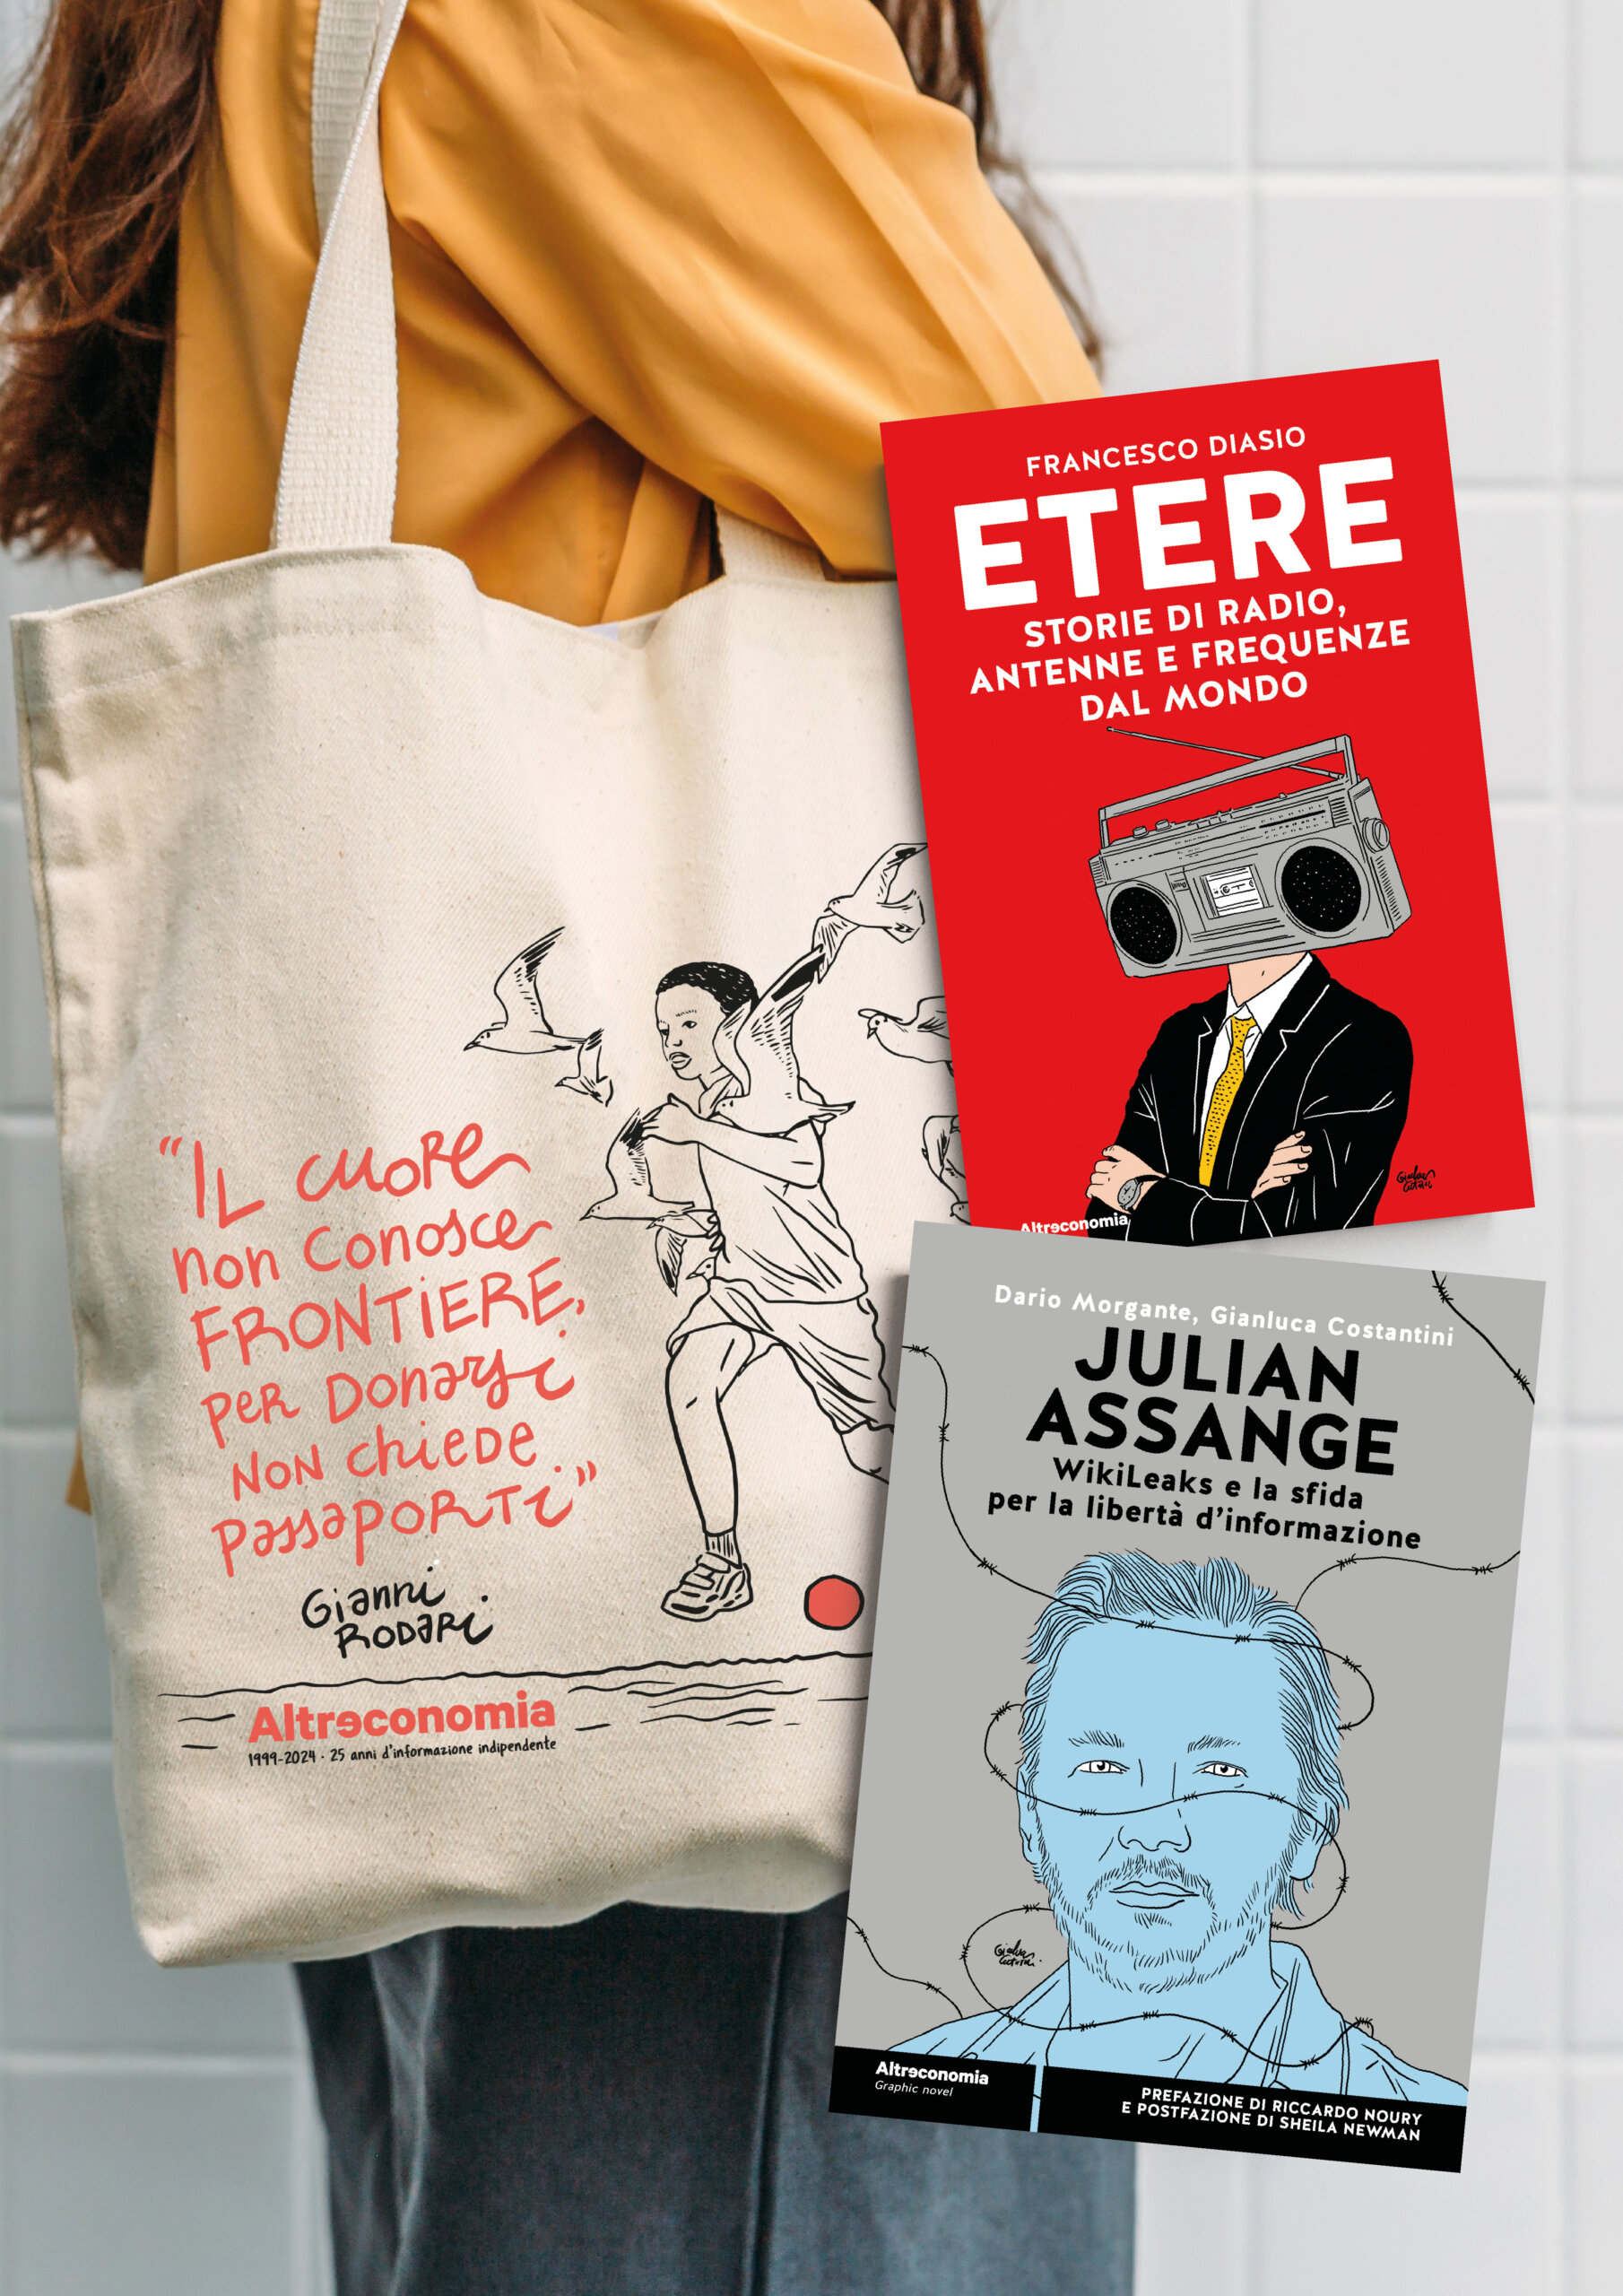 Fotografia dello shopper di Altreconomia con le copertine dei libri Julian Assange e Etere